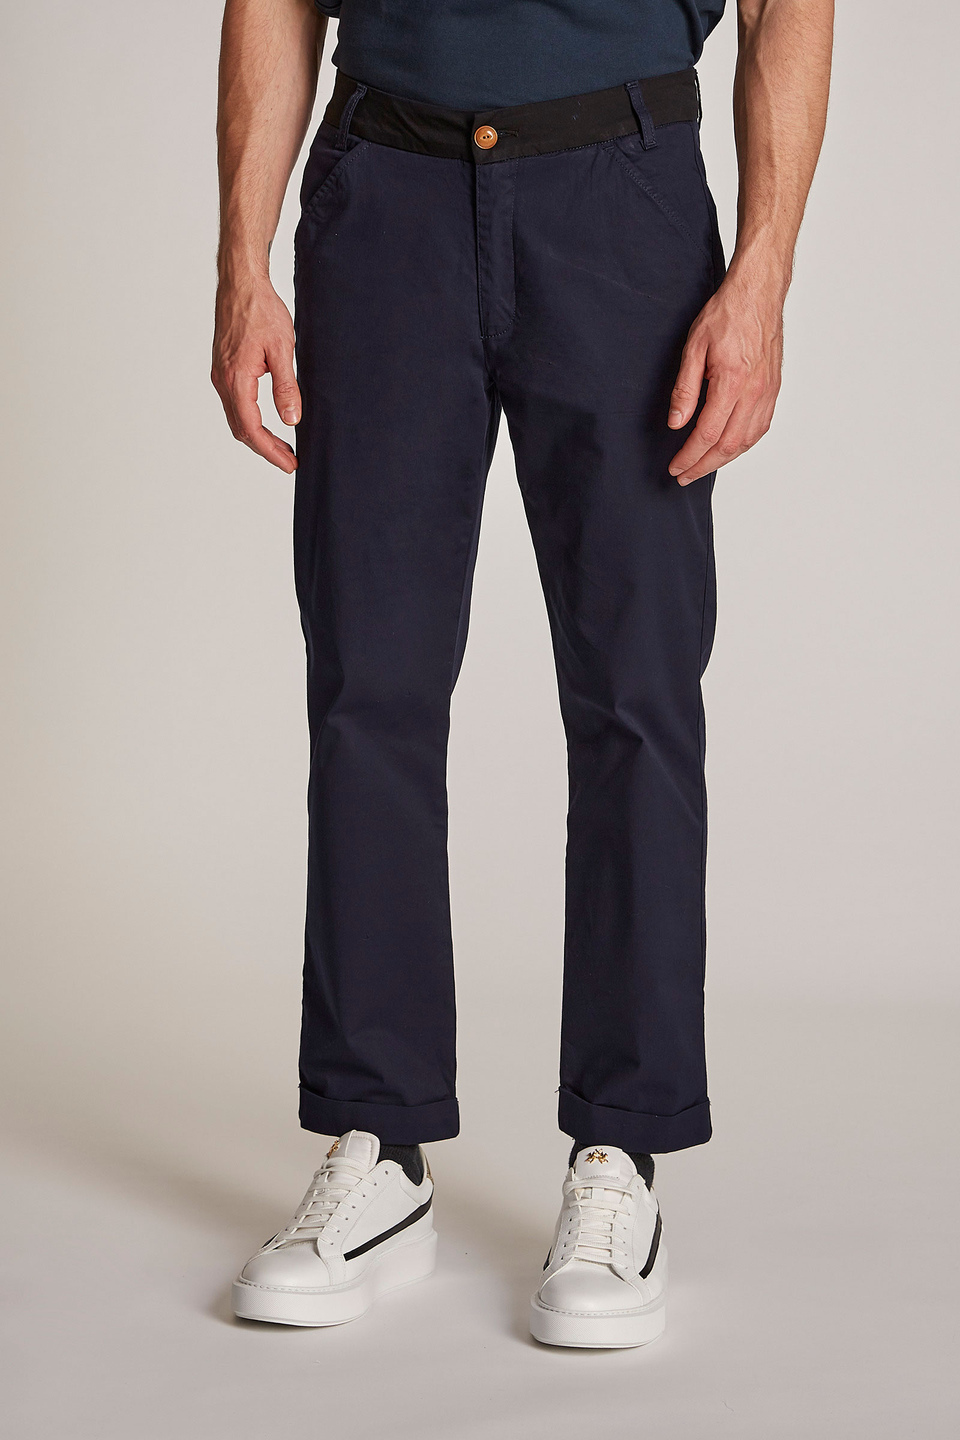 Pantalone da uomo in cotone misto lino regular fit | La Martina - Official Online Shop